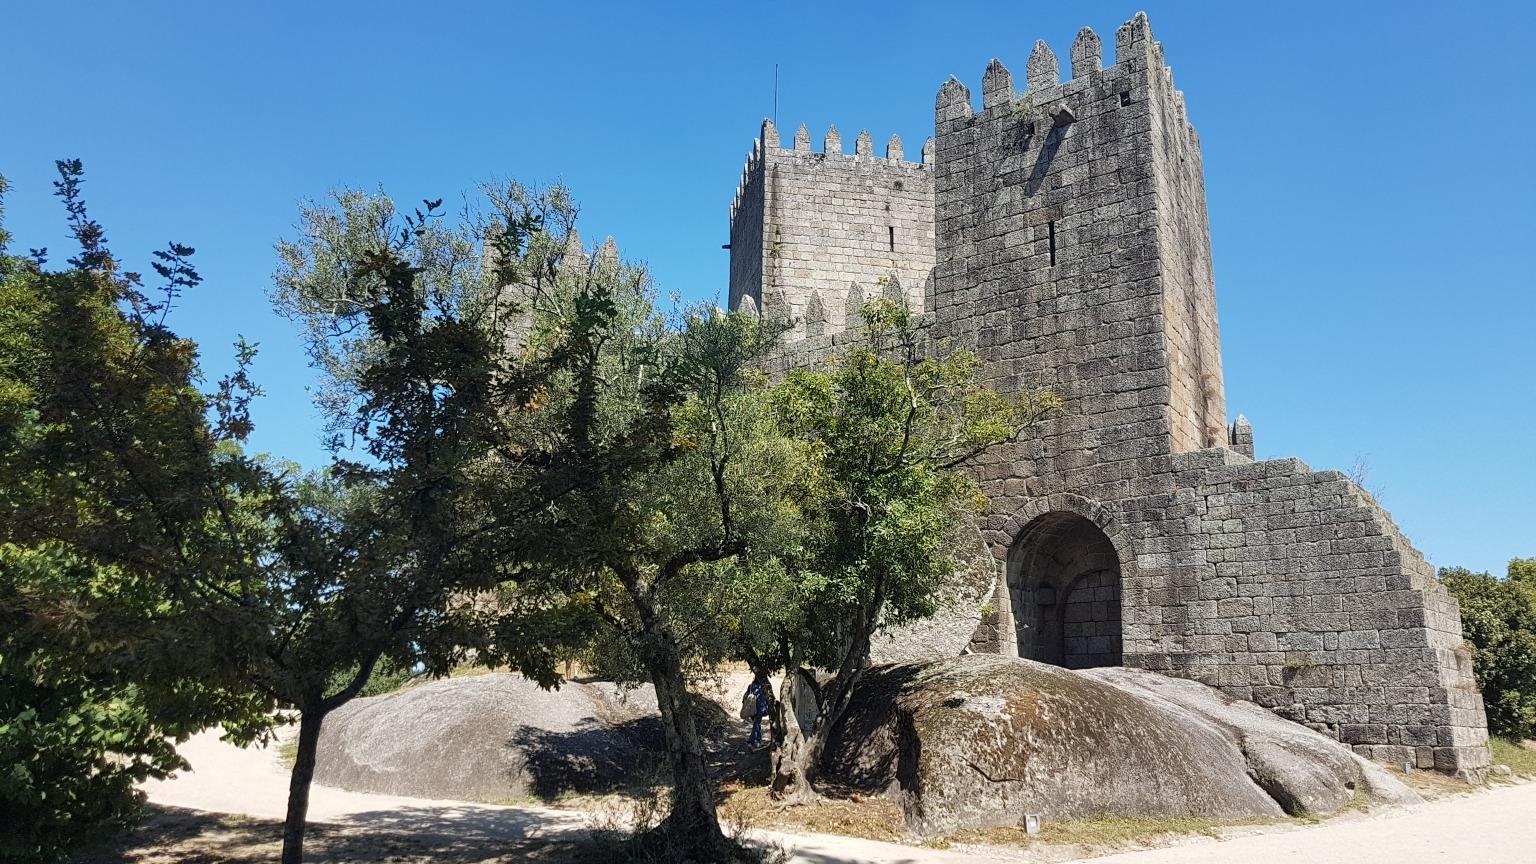 Construit au Xe siècle, le château de Guimarães est le principal monument médiéval de cette ville historique classée par l'UNESCO.